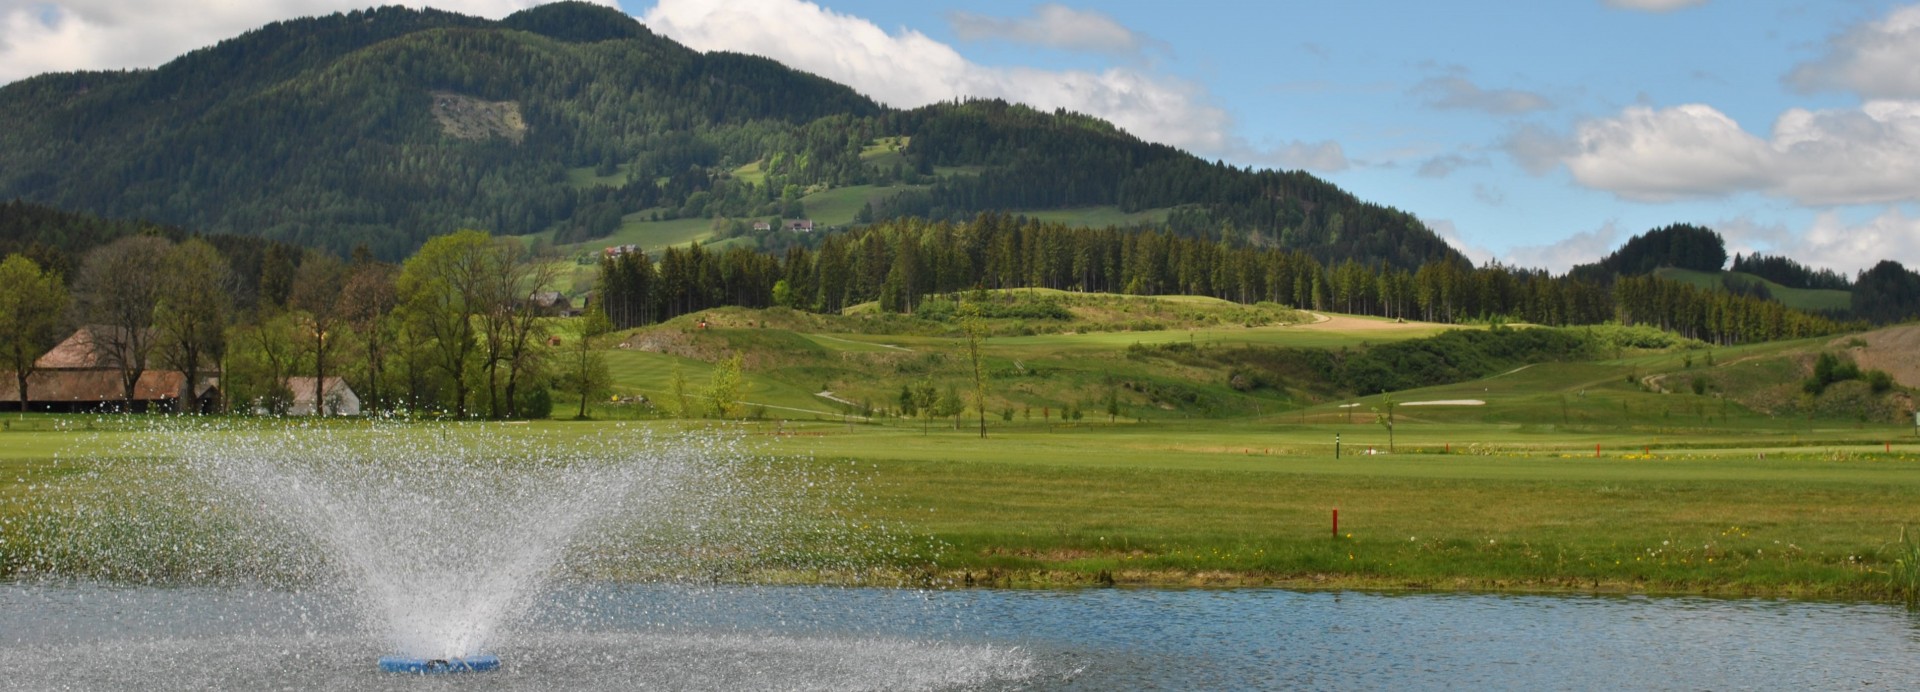 Styrian Mountain Golf Mariahof  | Golfové zájezdy, golfová dovolená, luxusní golf